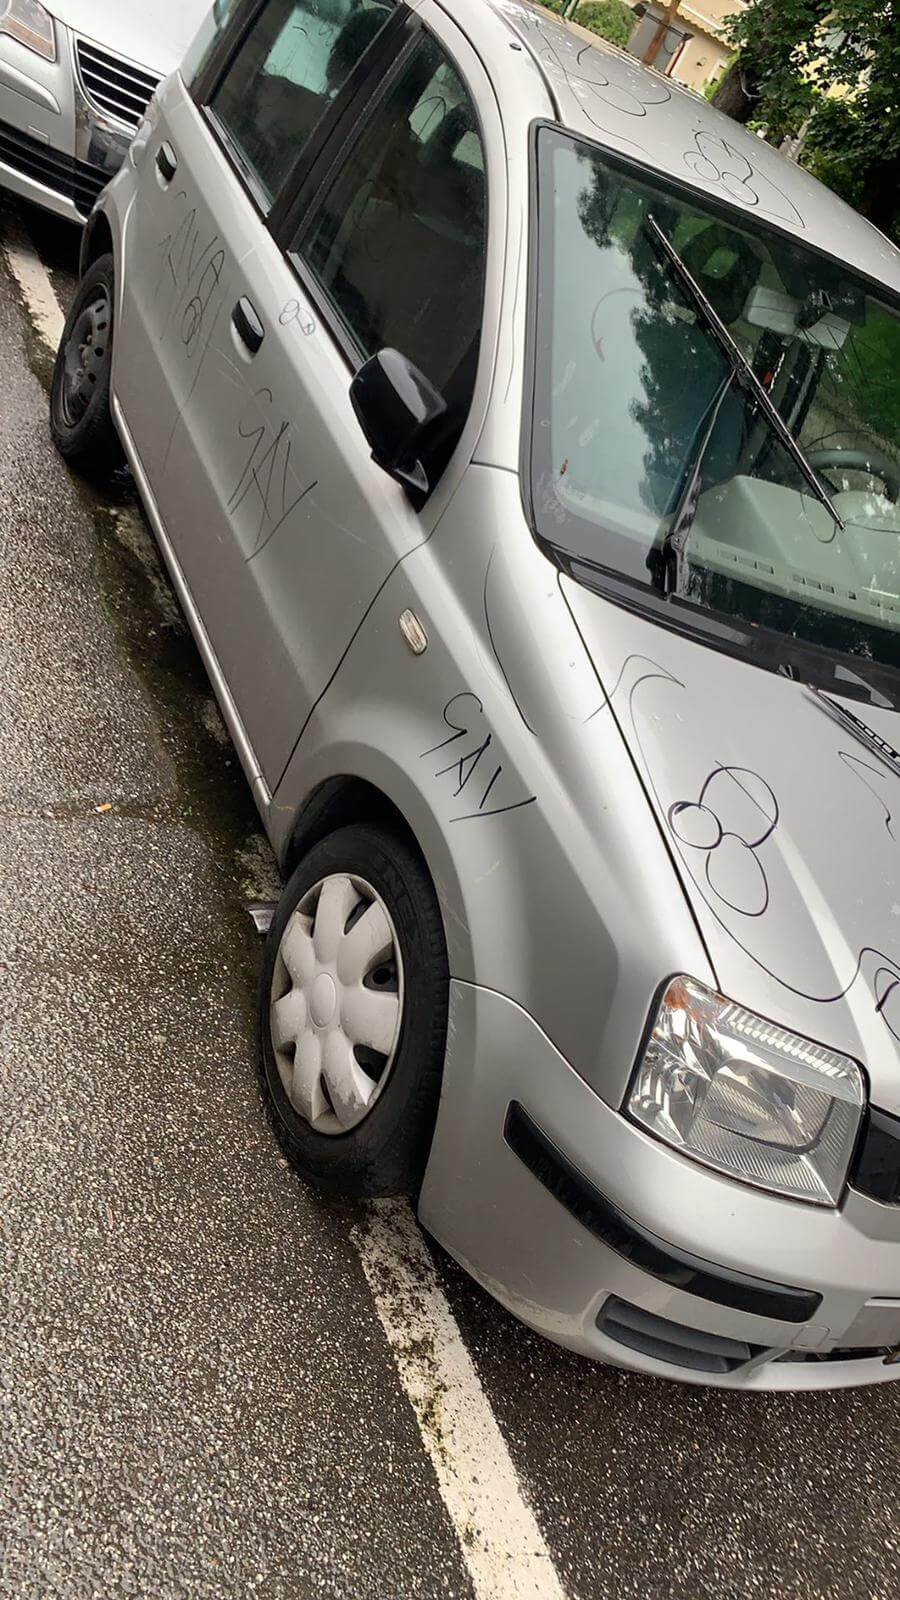 Bolzano, gli devastano l'auto con scritte e disegni omofobi - AUTO BOLZANO 20202 1 - Gay.it